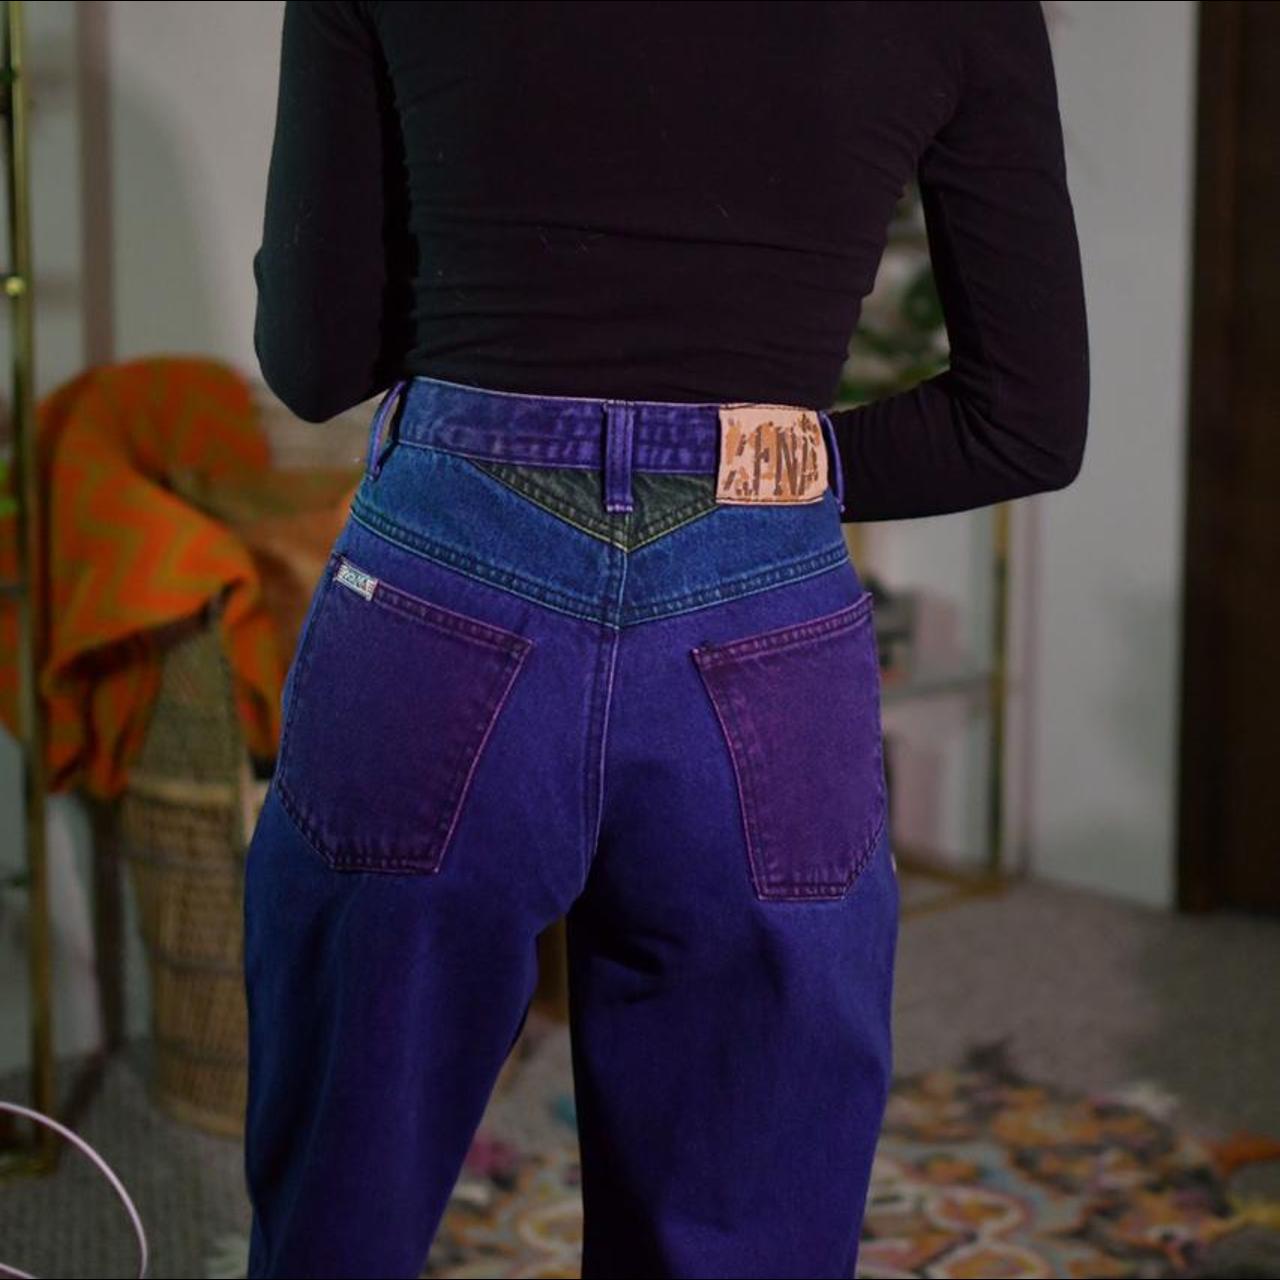 Zena Jeans Women's Purple and Blue Jeans